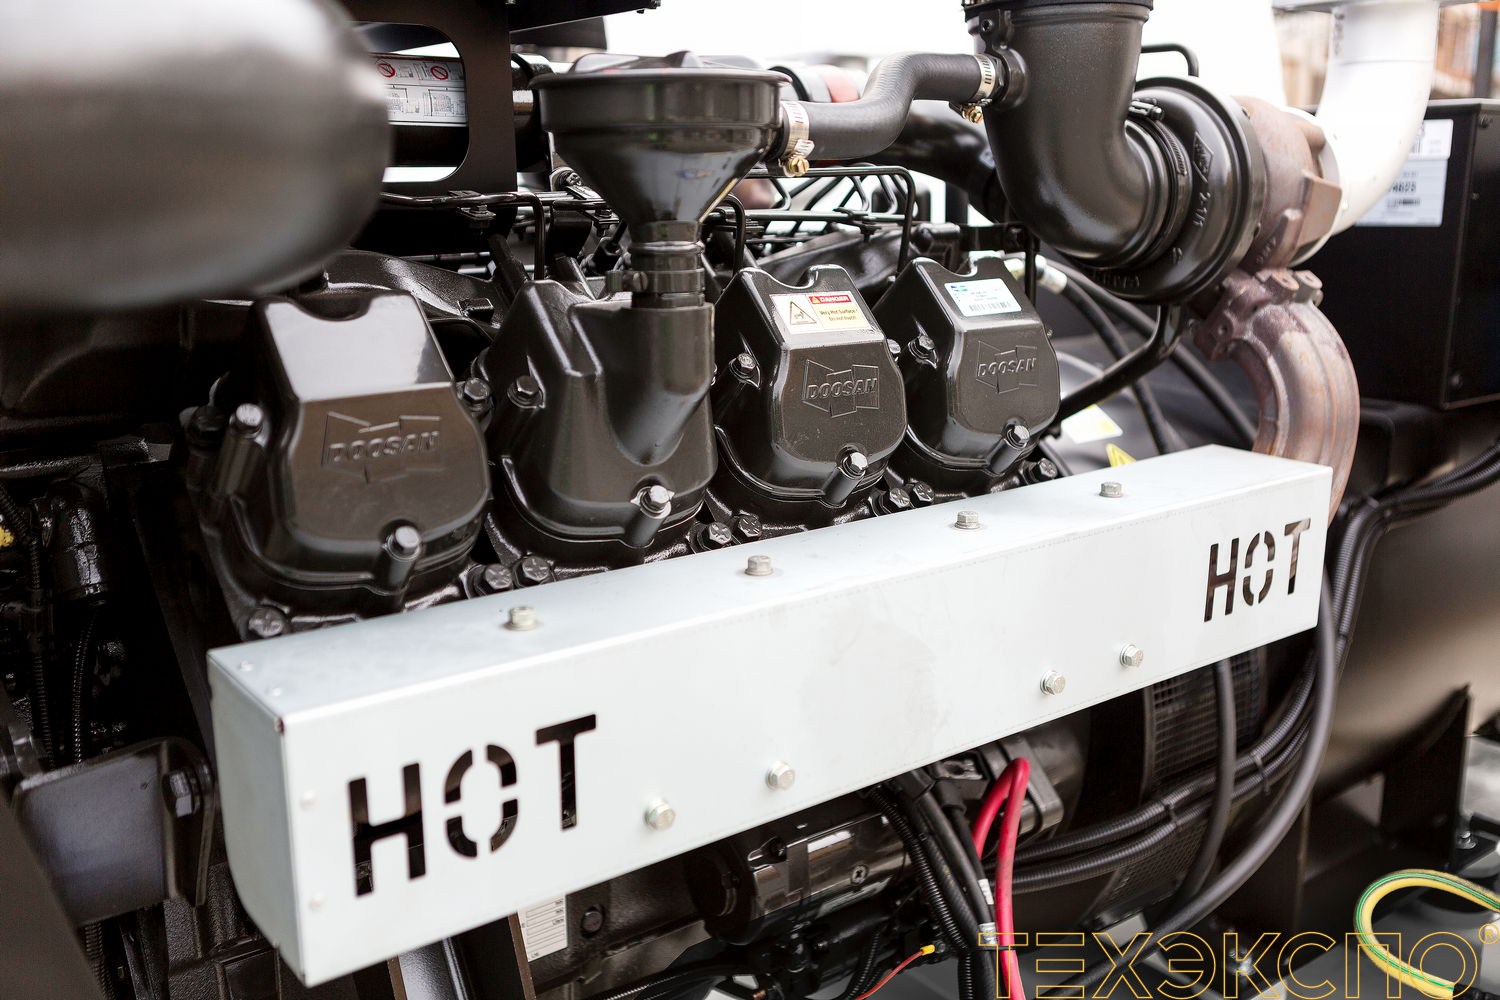 HERTZ HG357DL - ДЭС 259 кВт в Санкт-Петербурге за 4 954 326 рублей | Дизельная электростанция в Техэкспо